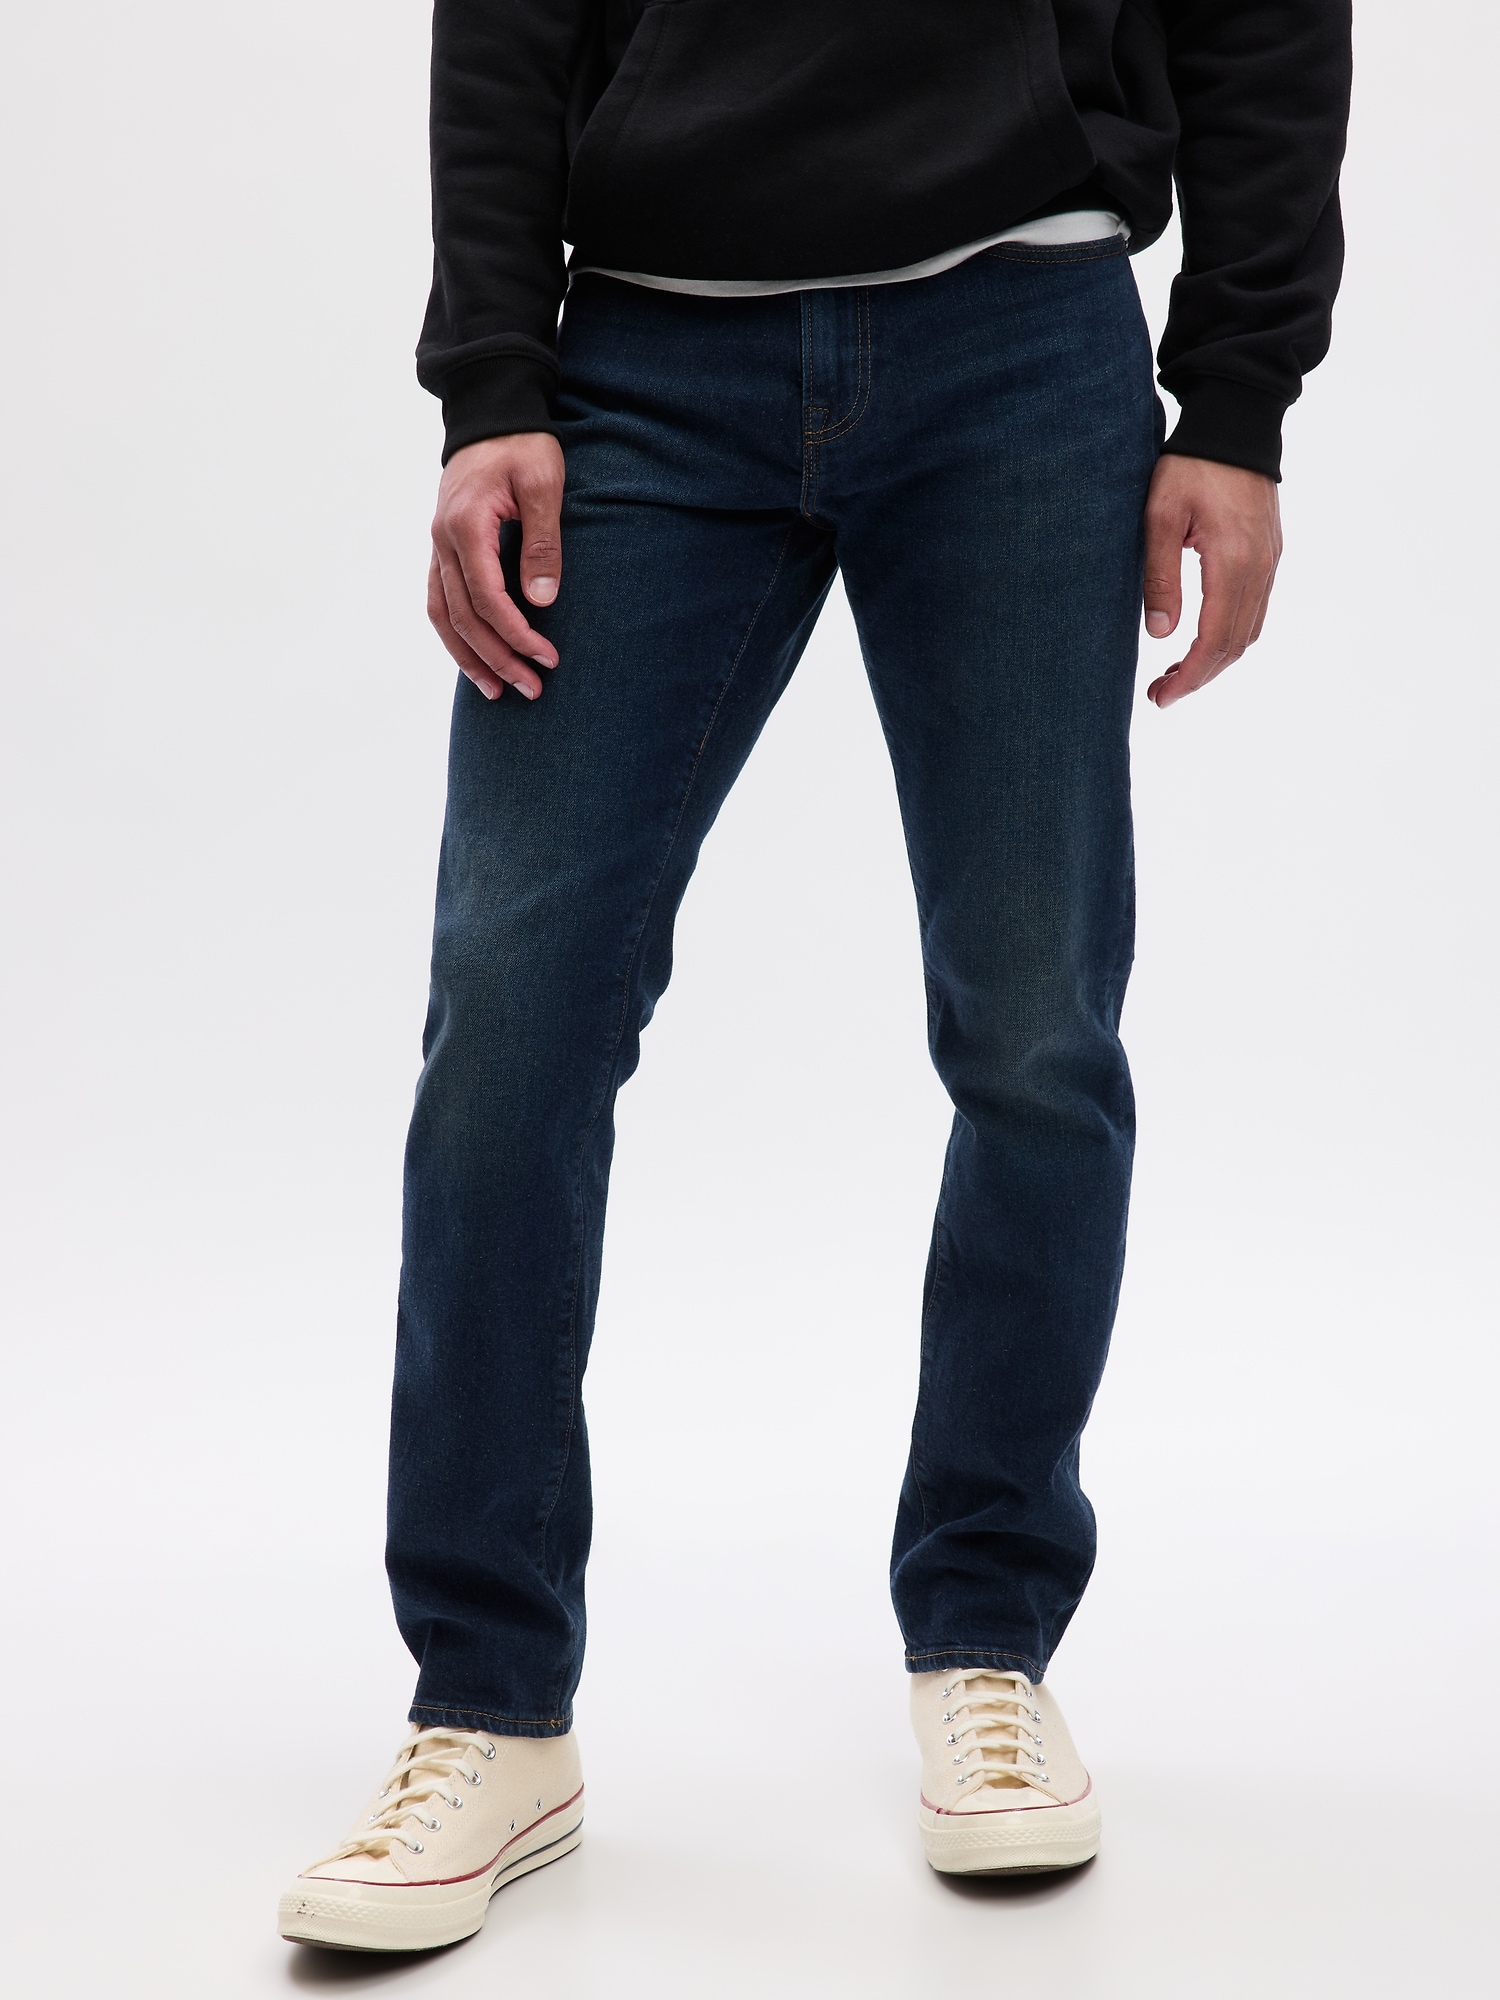 Men's Slim Jeans in Gapflex by Gap Medium Wash Size 31W